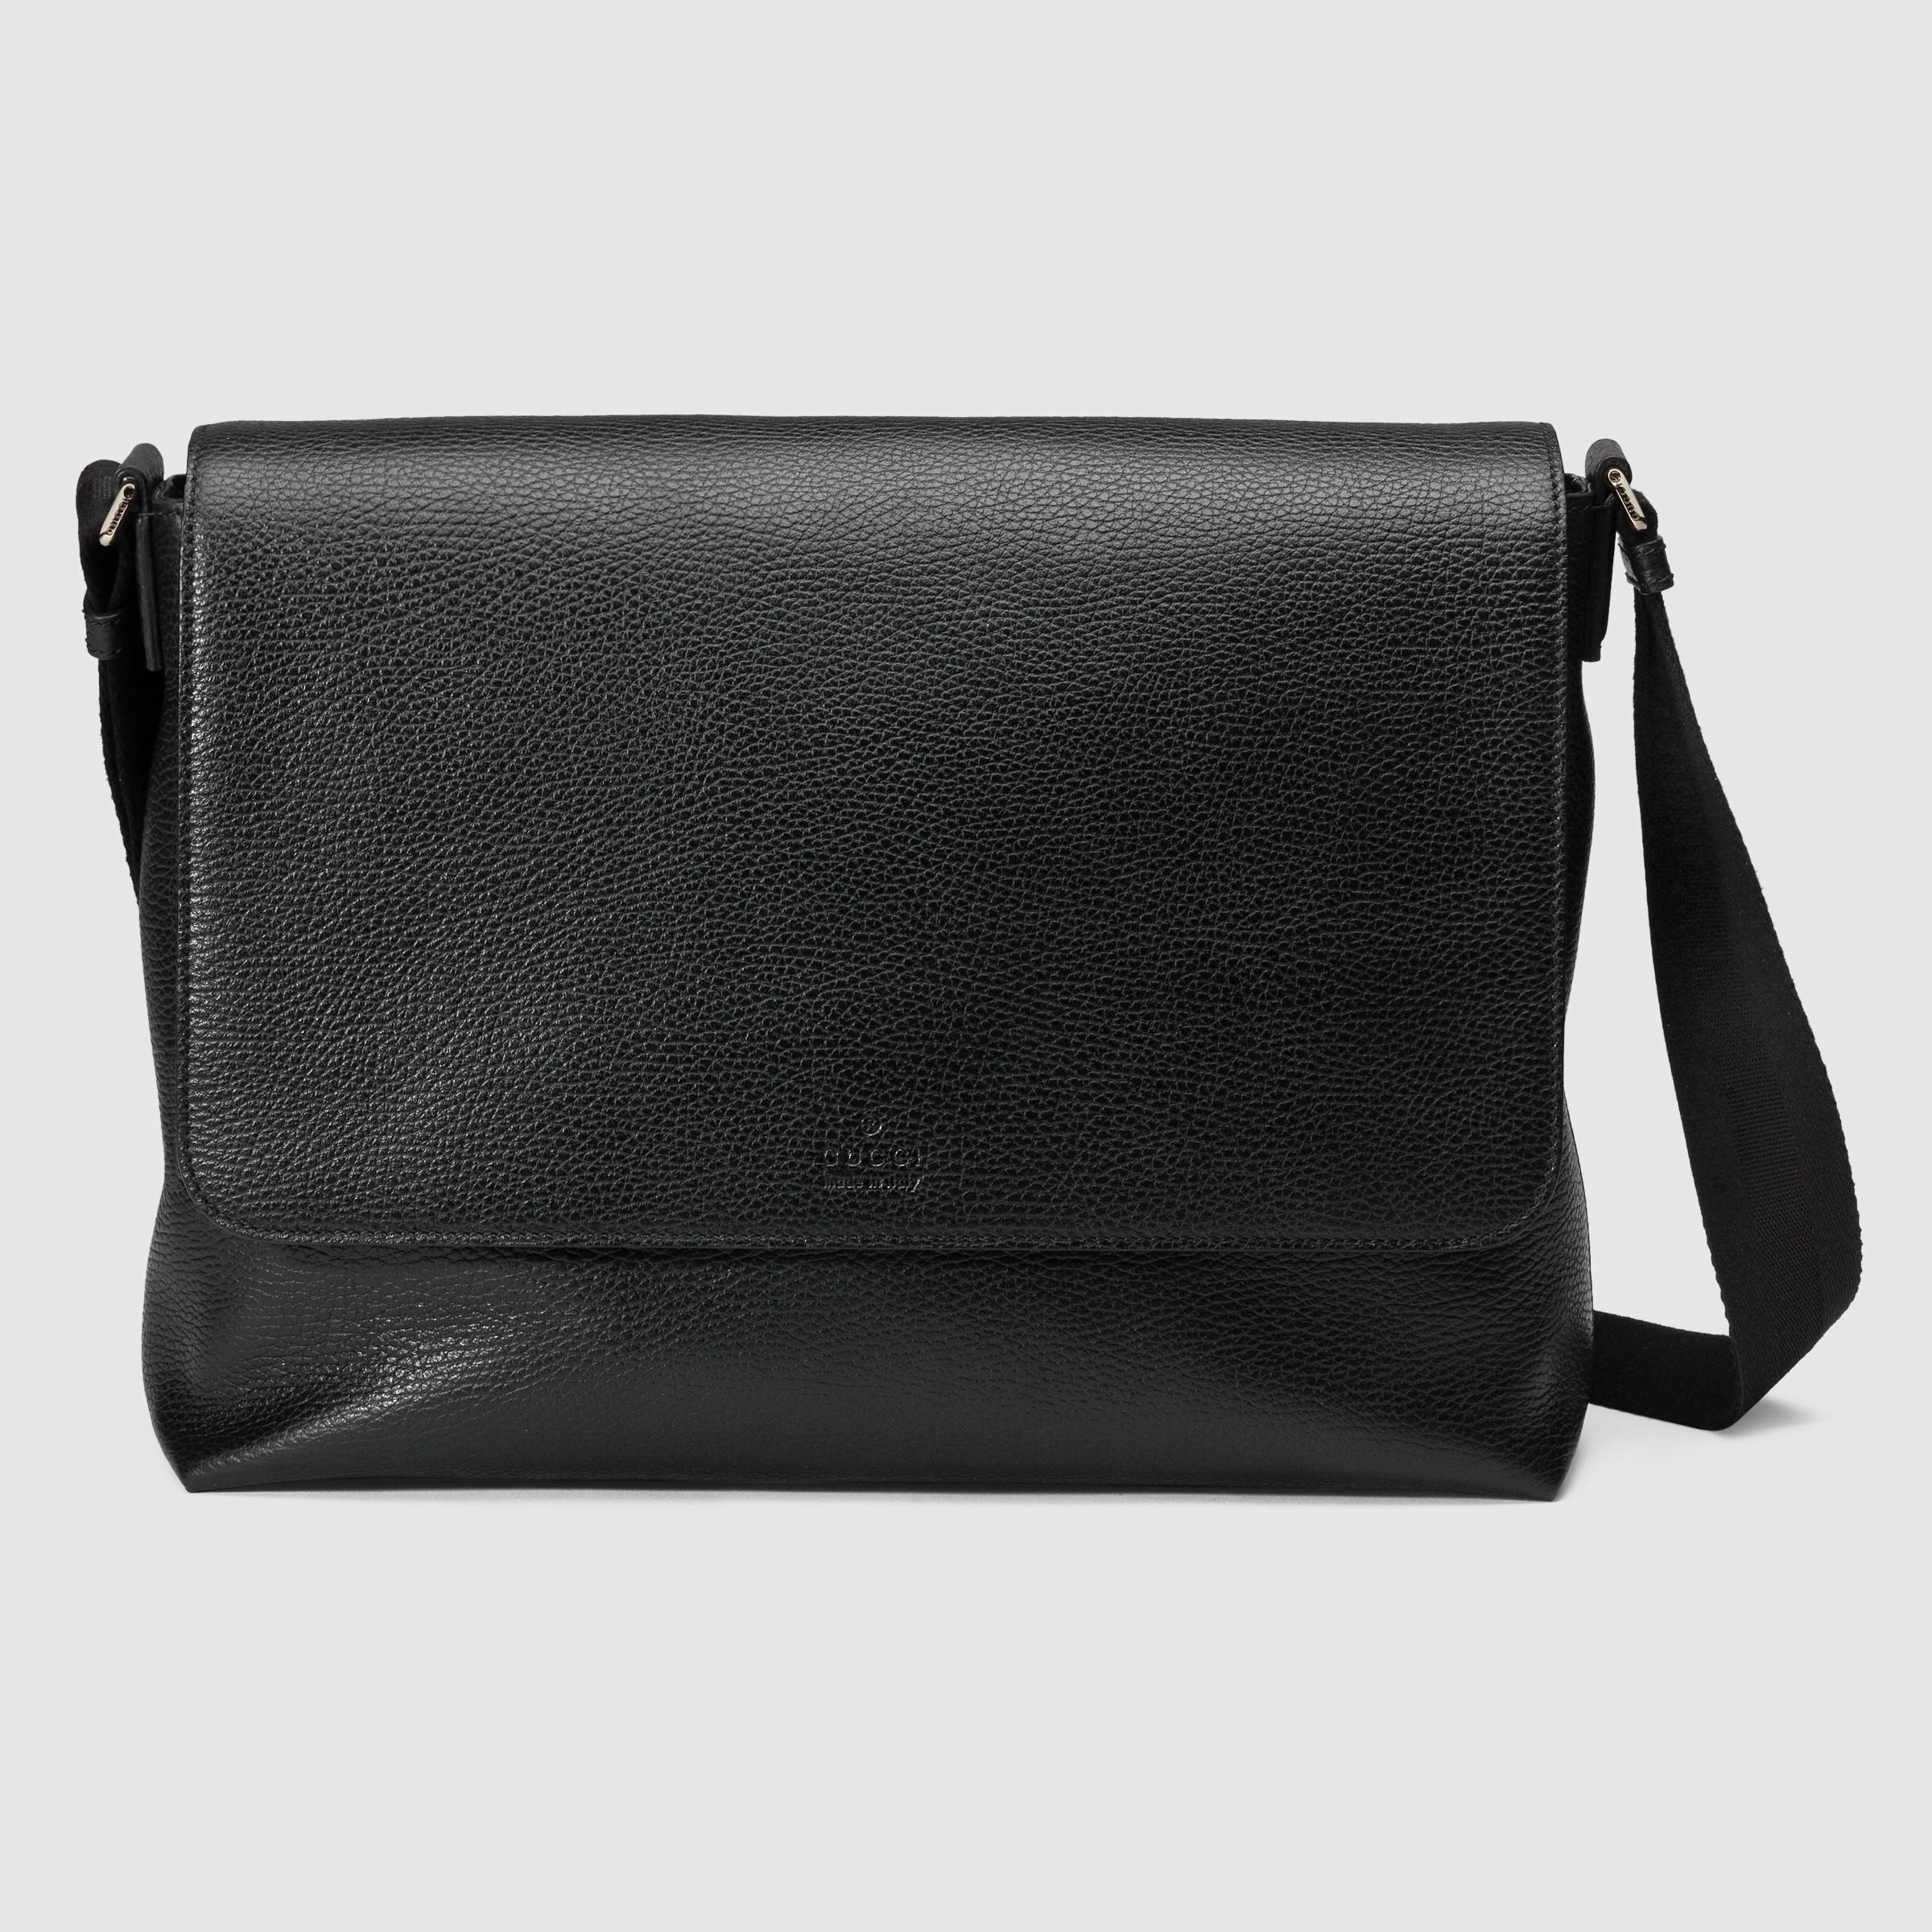 Lyst - Gucci Leather Messenger Bag in Black for Men